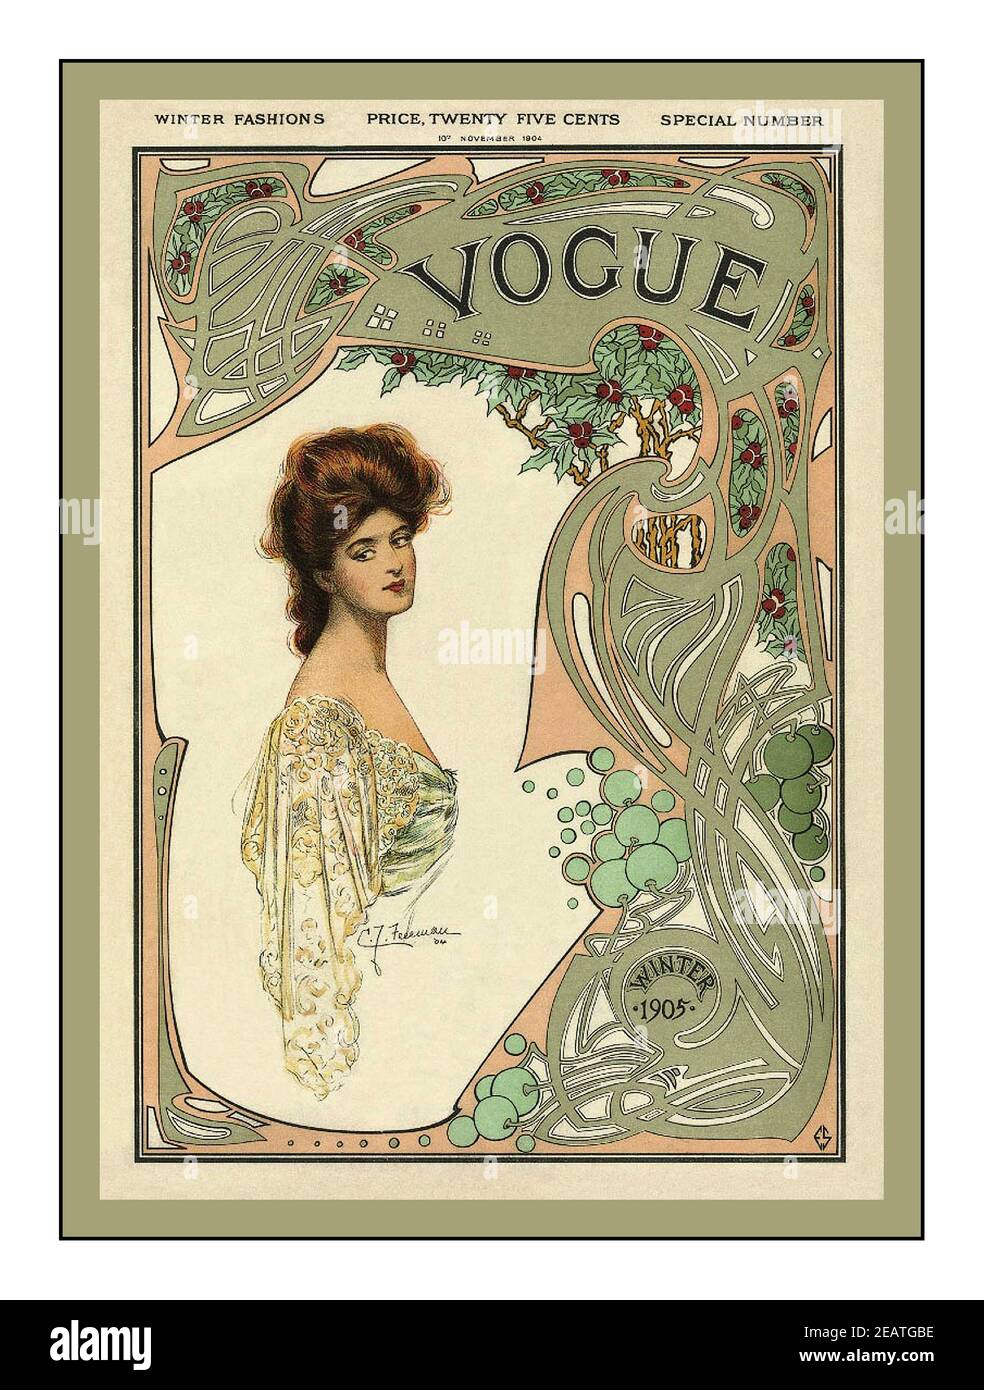 Vintage 1900's Vogue couverture avant 1904 les vêtements d'hiver couvrent le prix Vingt-cinq cents Banque D'Images